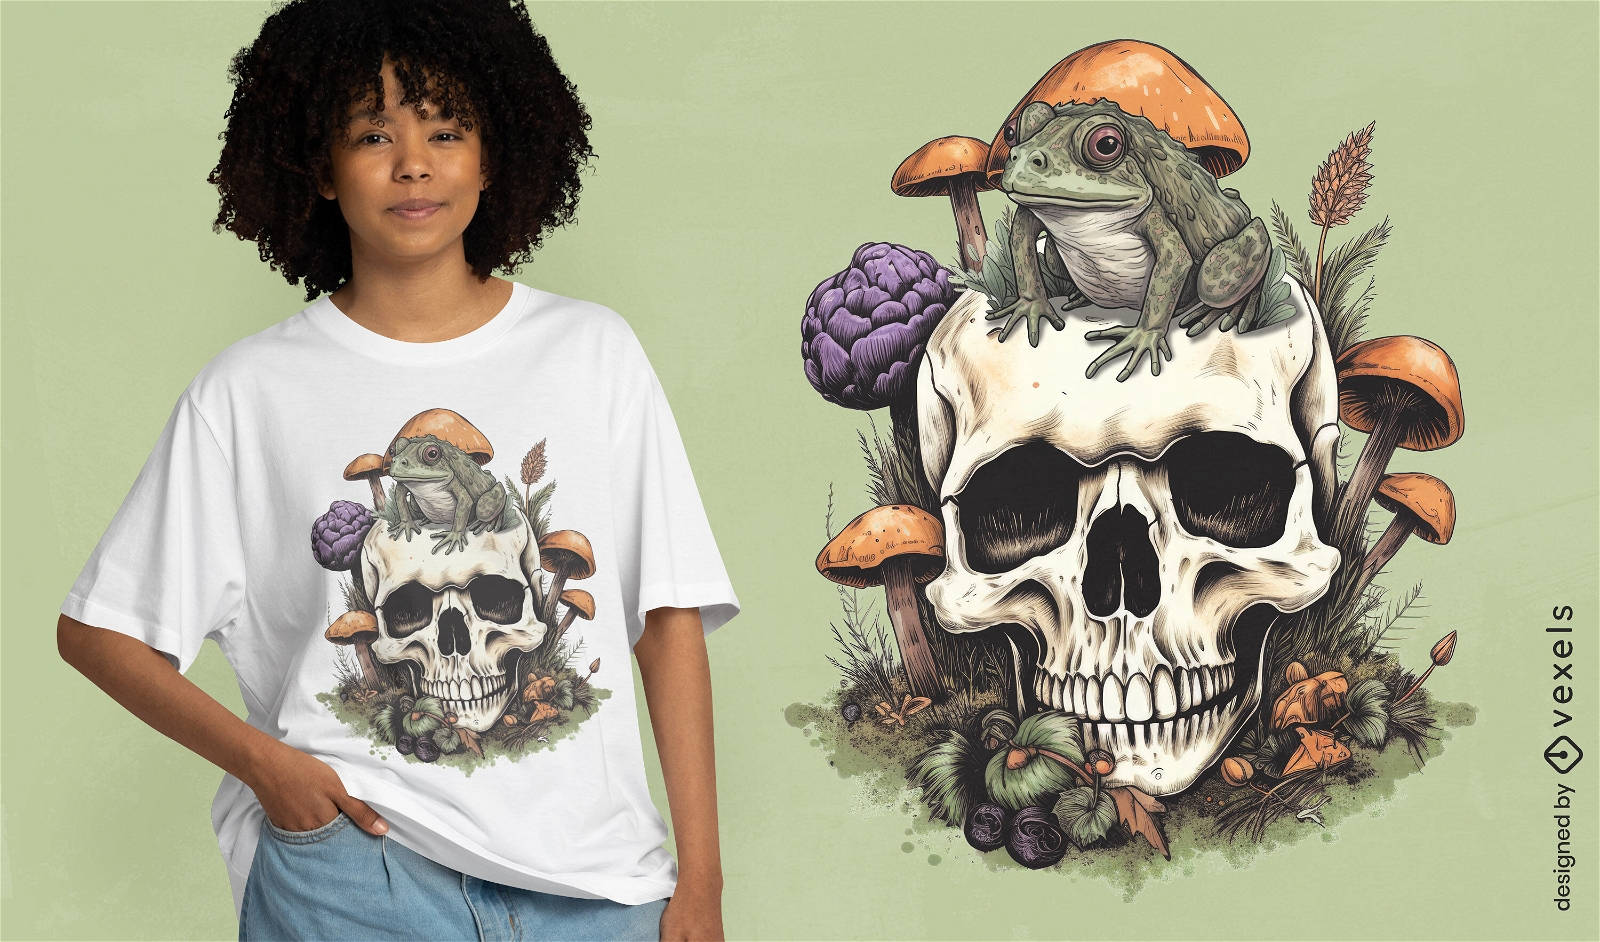 Frosch auf einem Totenkopf-Cpttagecore-T-Shirt-Design